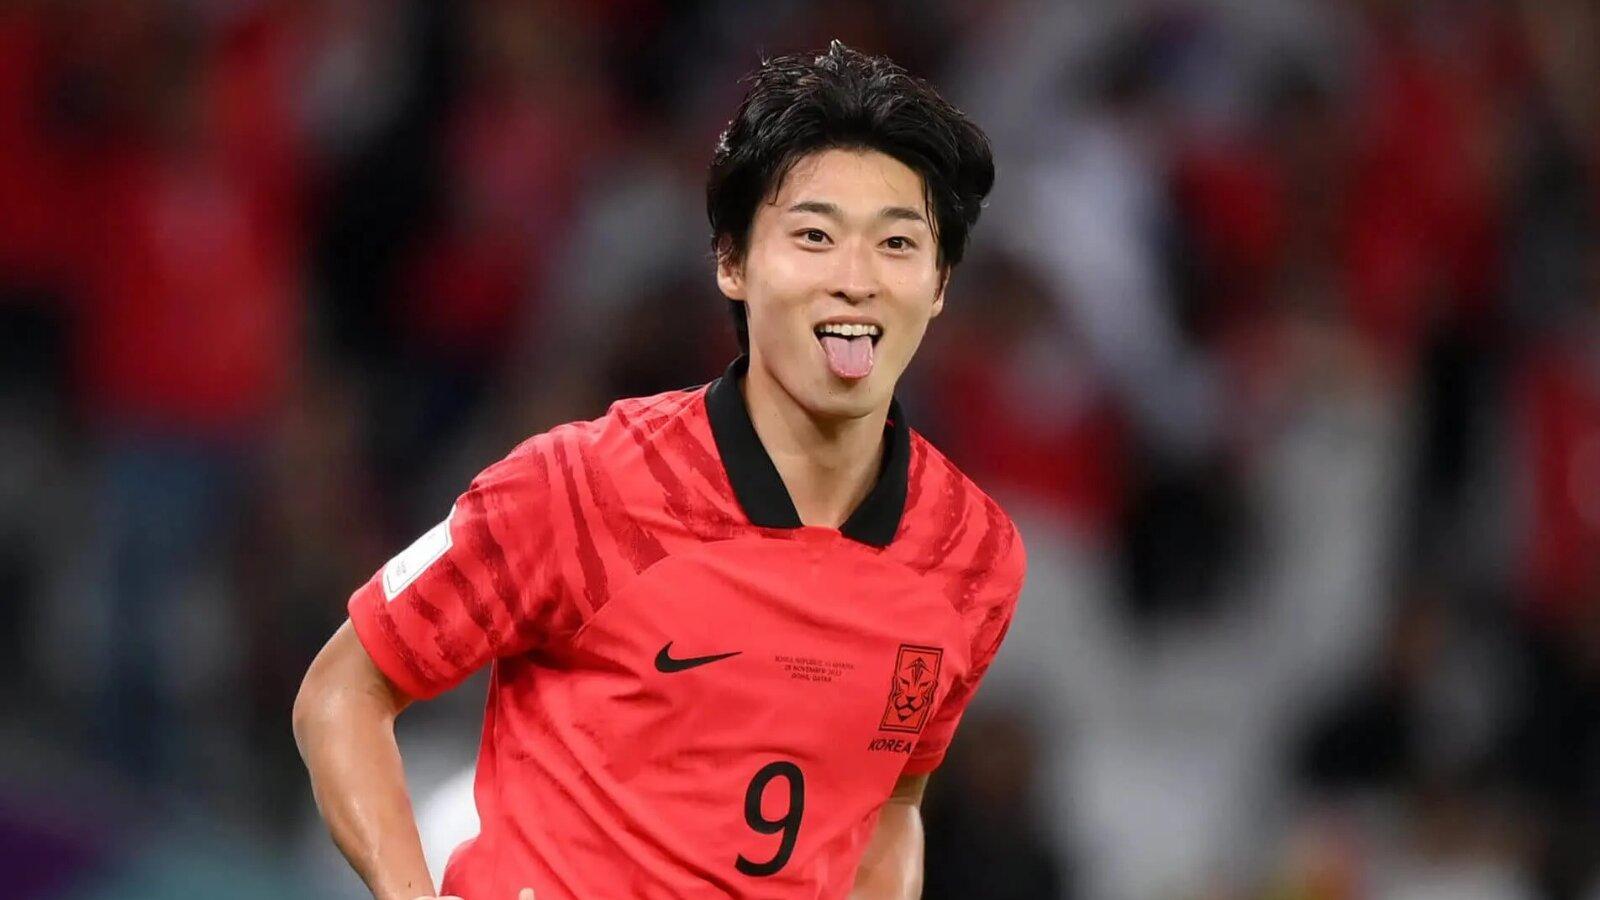 Tiền đạo mới nổi của tuyển Hàn Quốc trong kì World Cup vừa qua (nguồn ảnh: Internet)